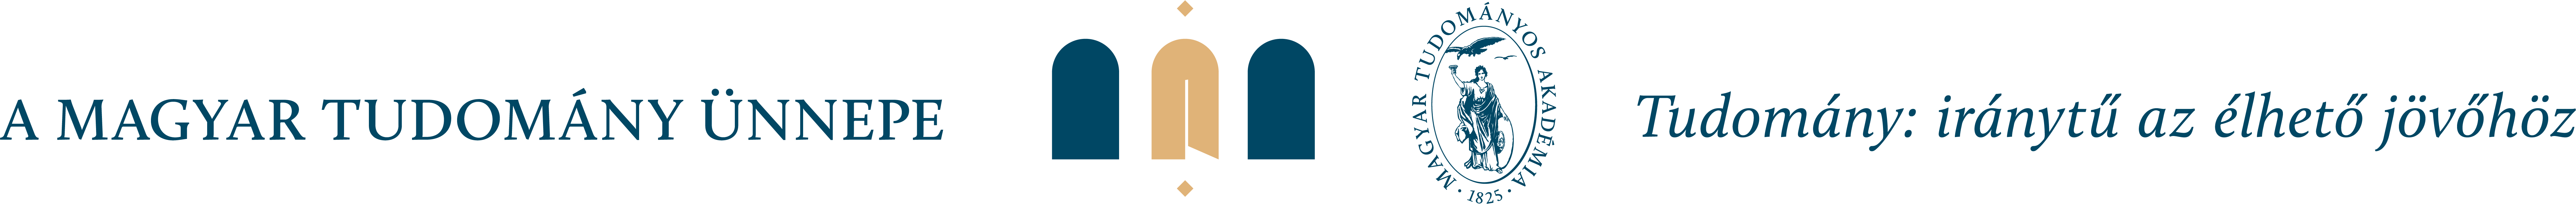 mtu logo motto 2021 vektor 02